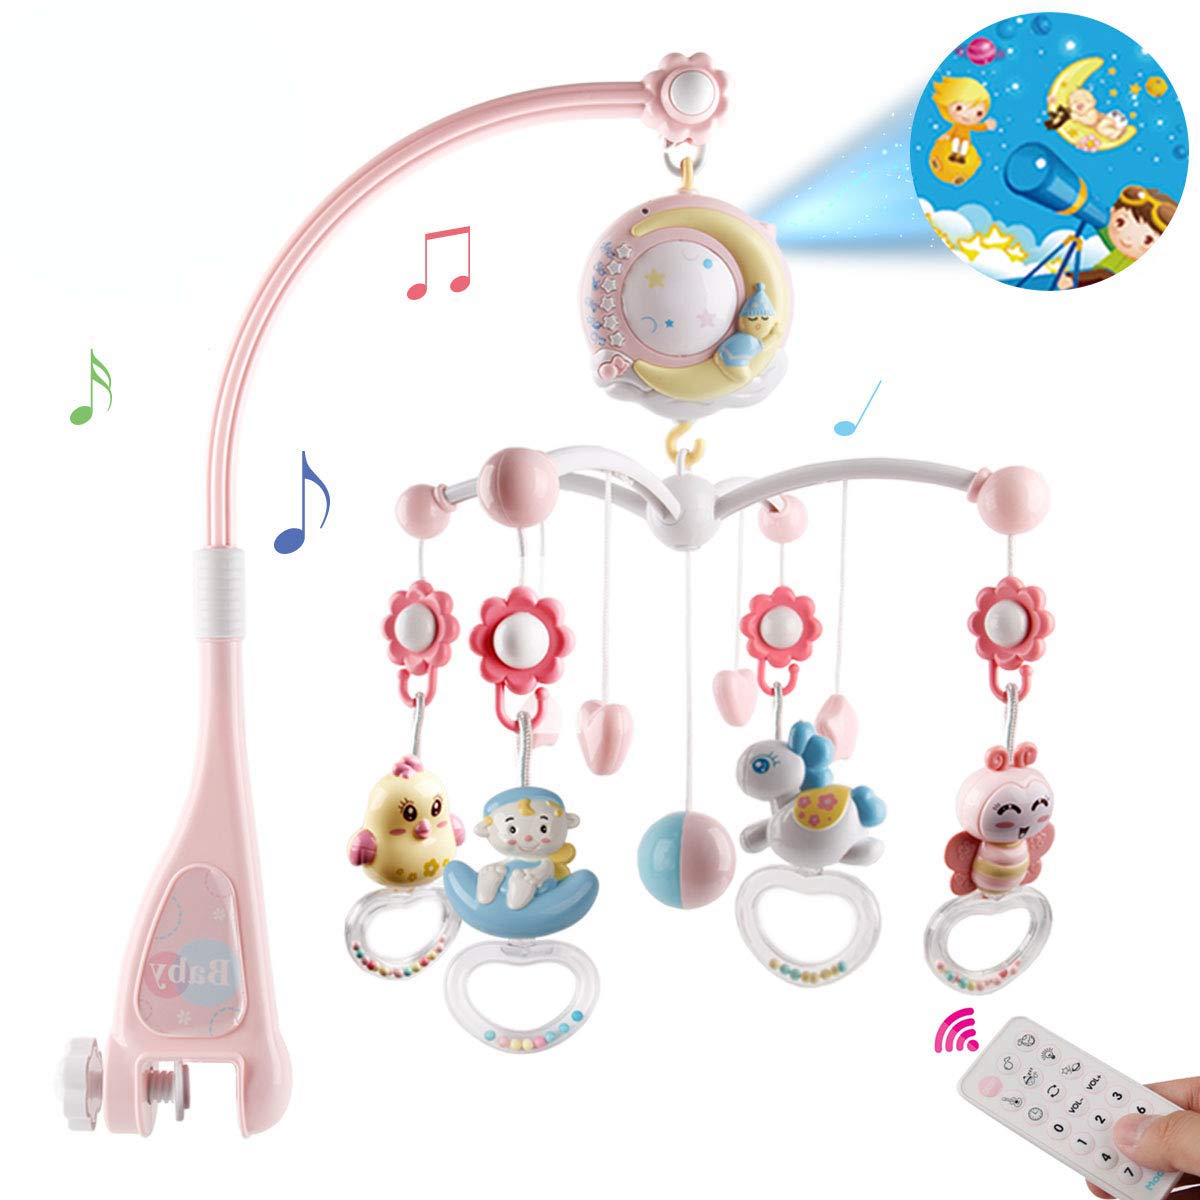 Musik Mobile Spieluhr Musikuhr Einschlafhilfe Kinderbett Baby Spielzeug Deko Neu 